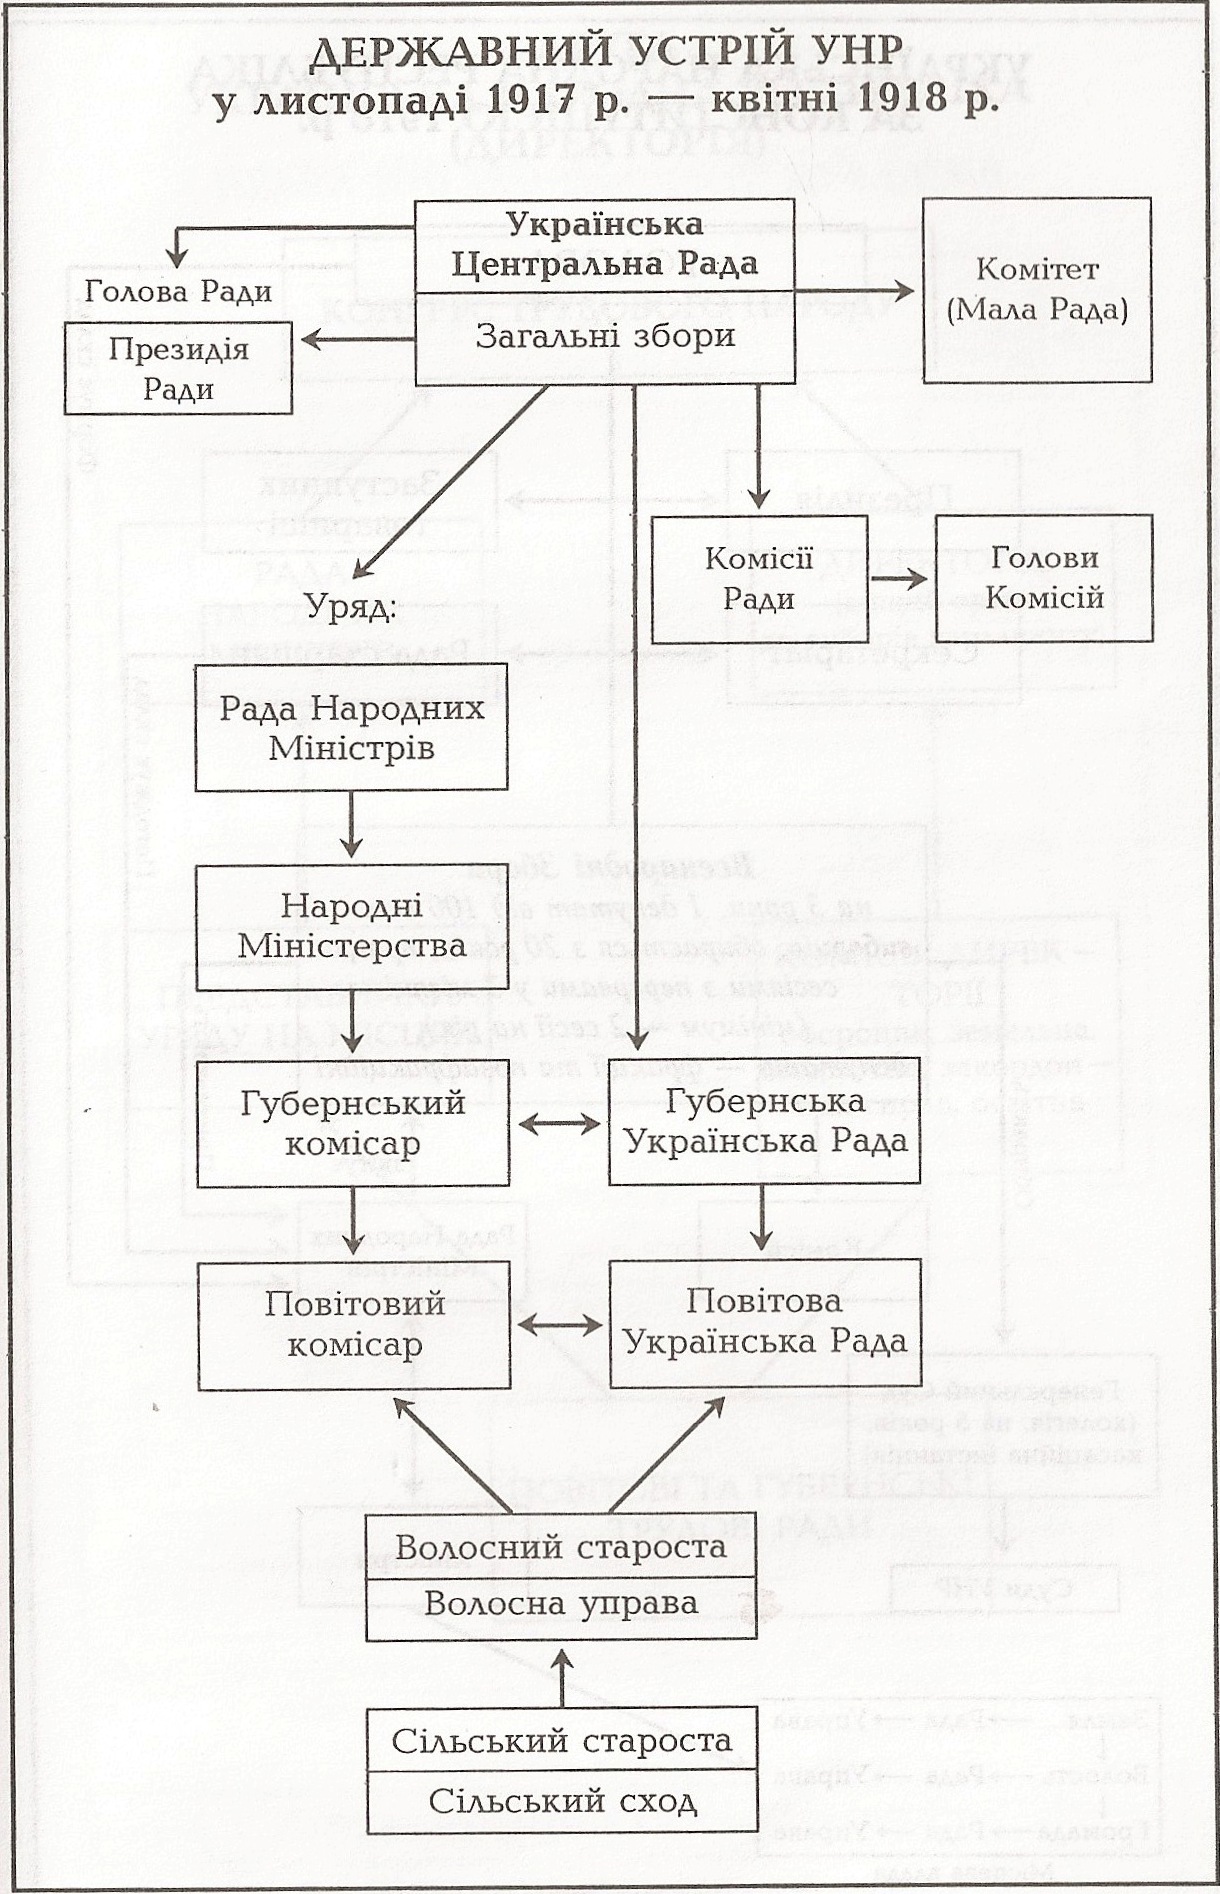 Таблиця: Державний устрій УНР у листопаді 1917 р. - квітні 1918 р.